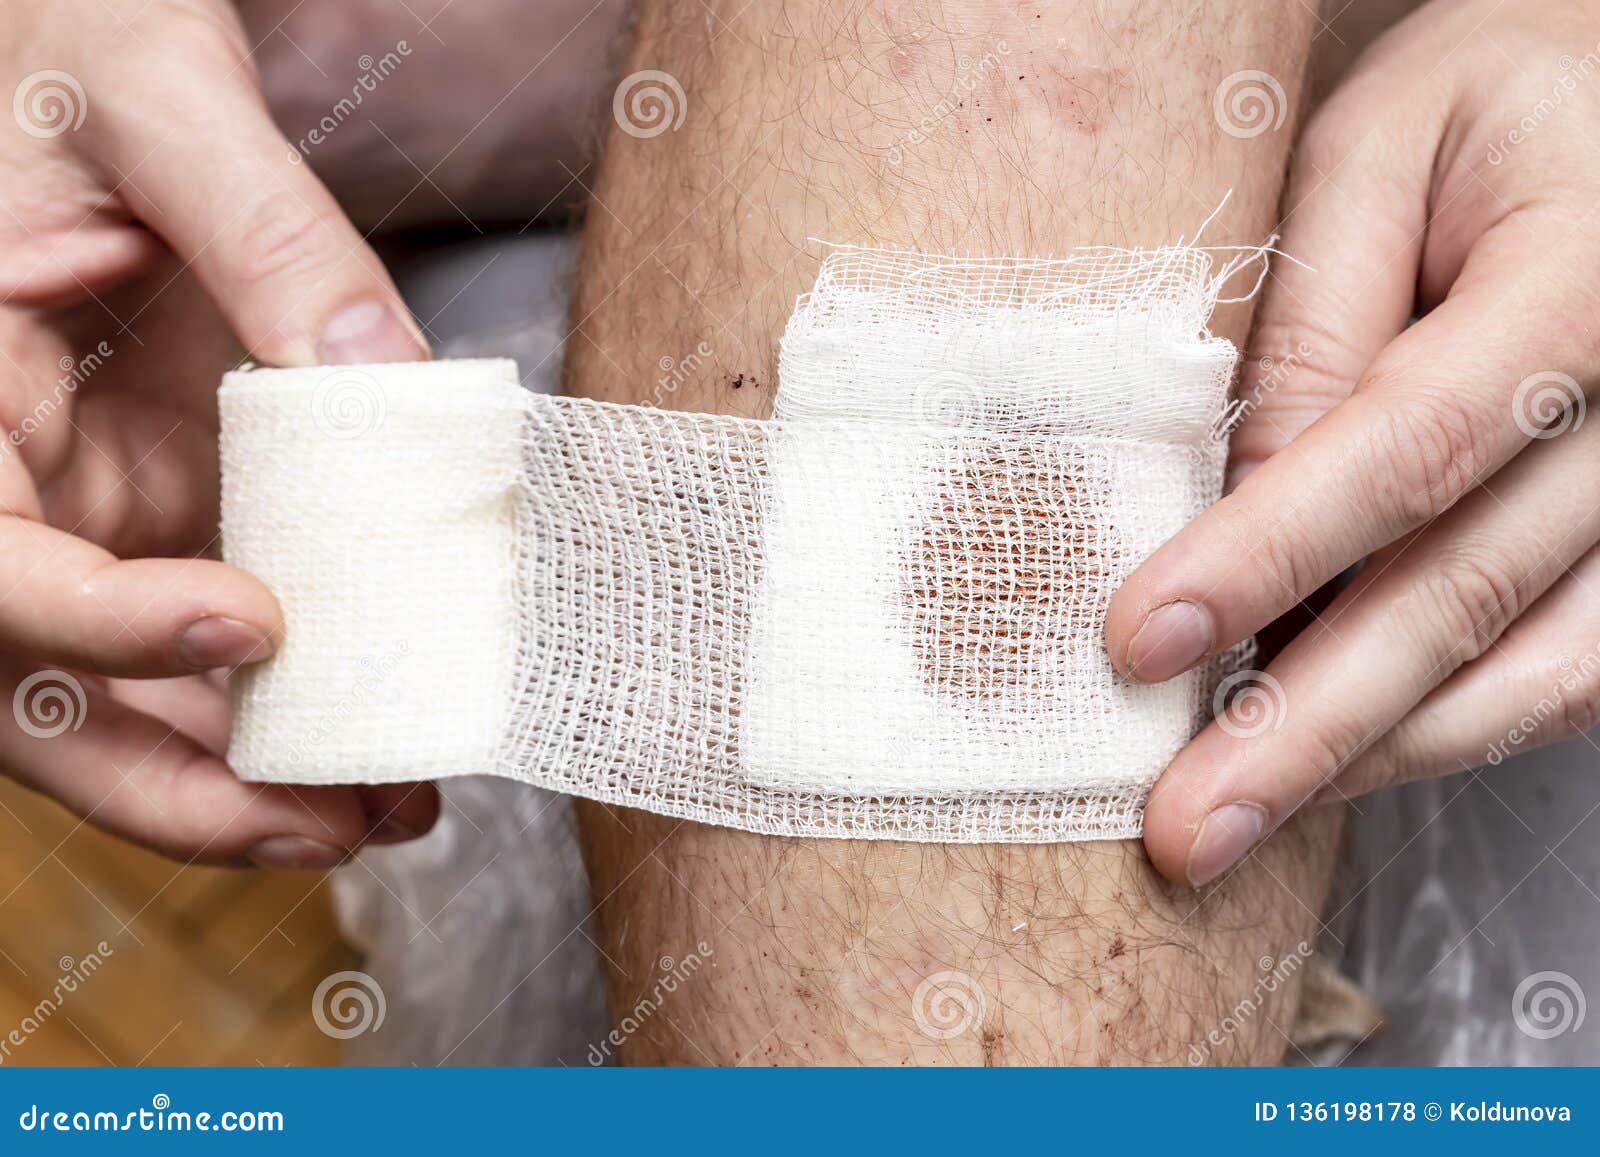 膝盖摔伤，抹了碘伏结痂后如何防止留疤？ - 知乎